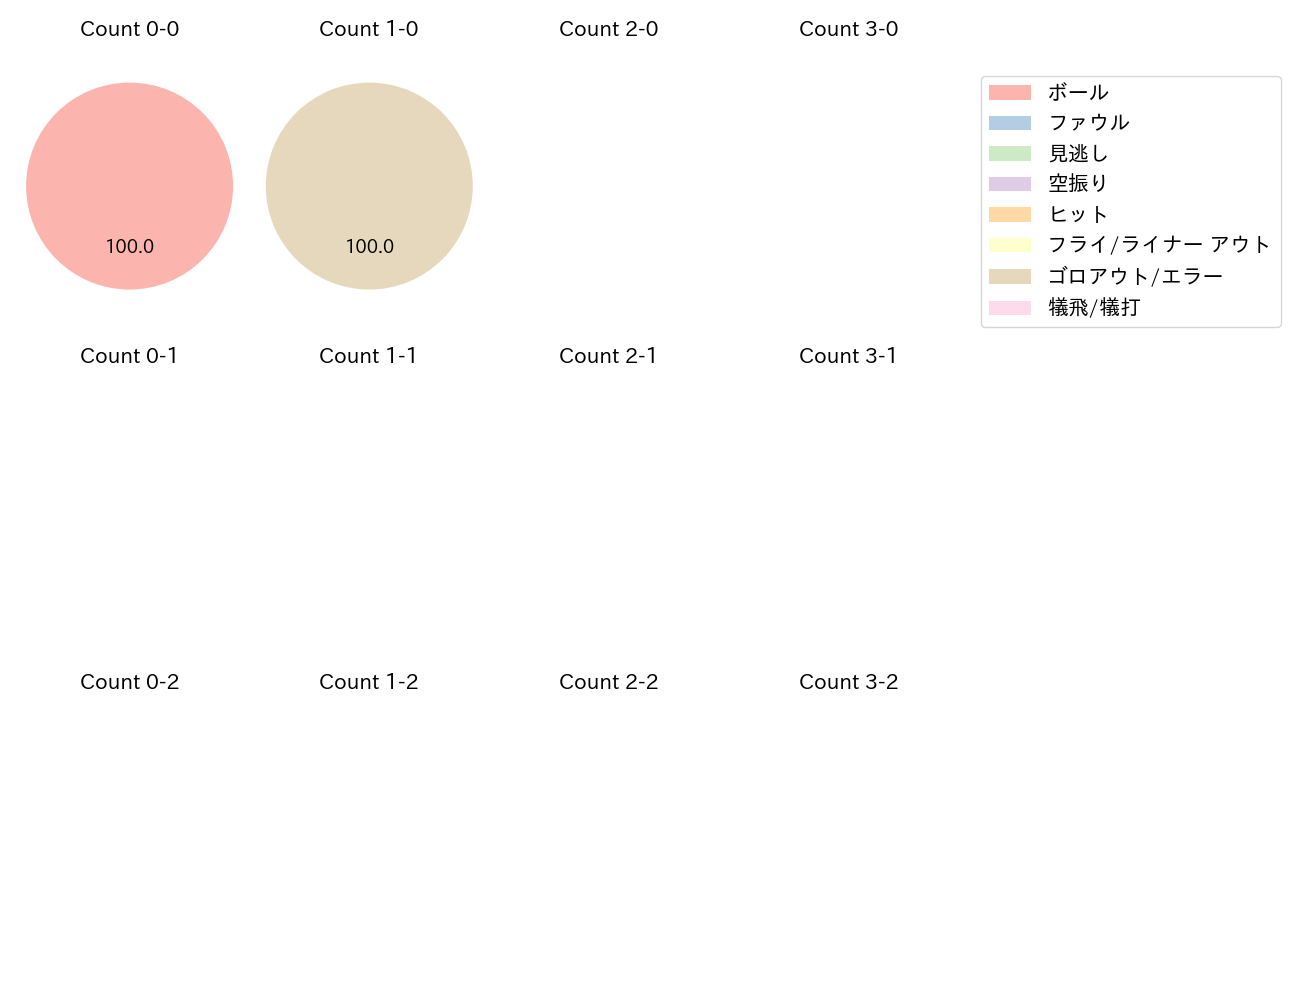 嶋 基宏の球数分布(2021年6月)